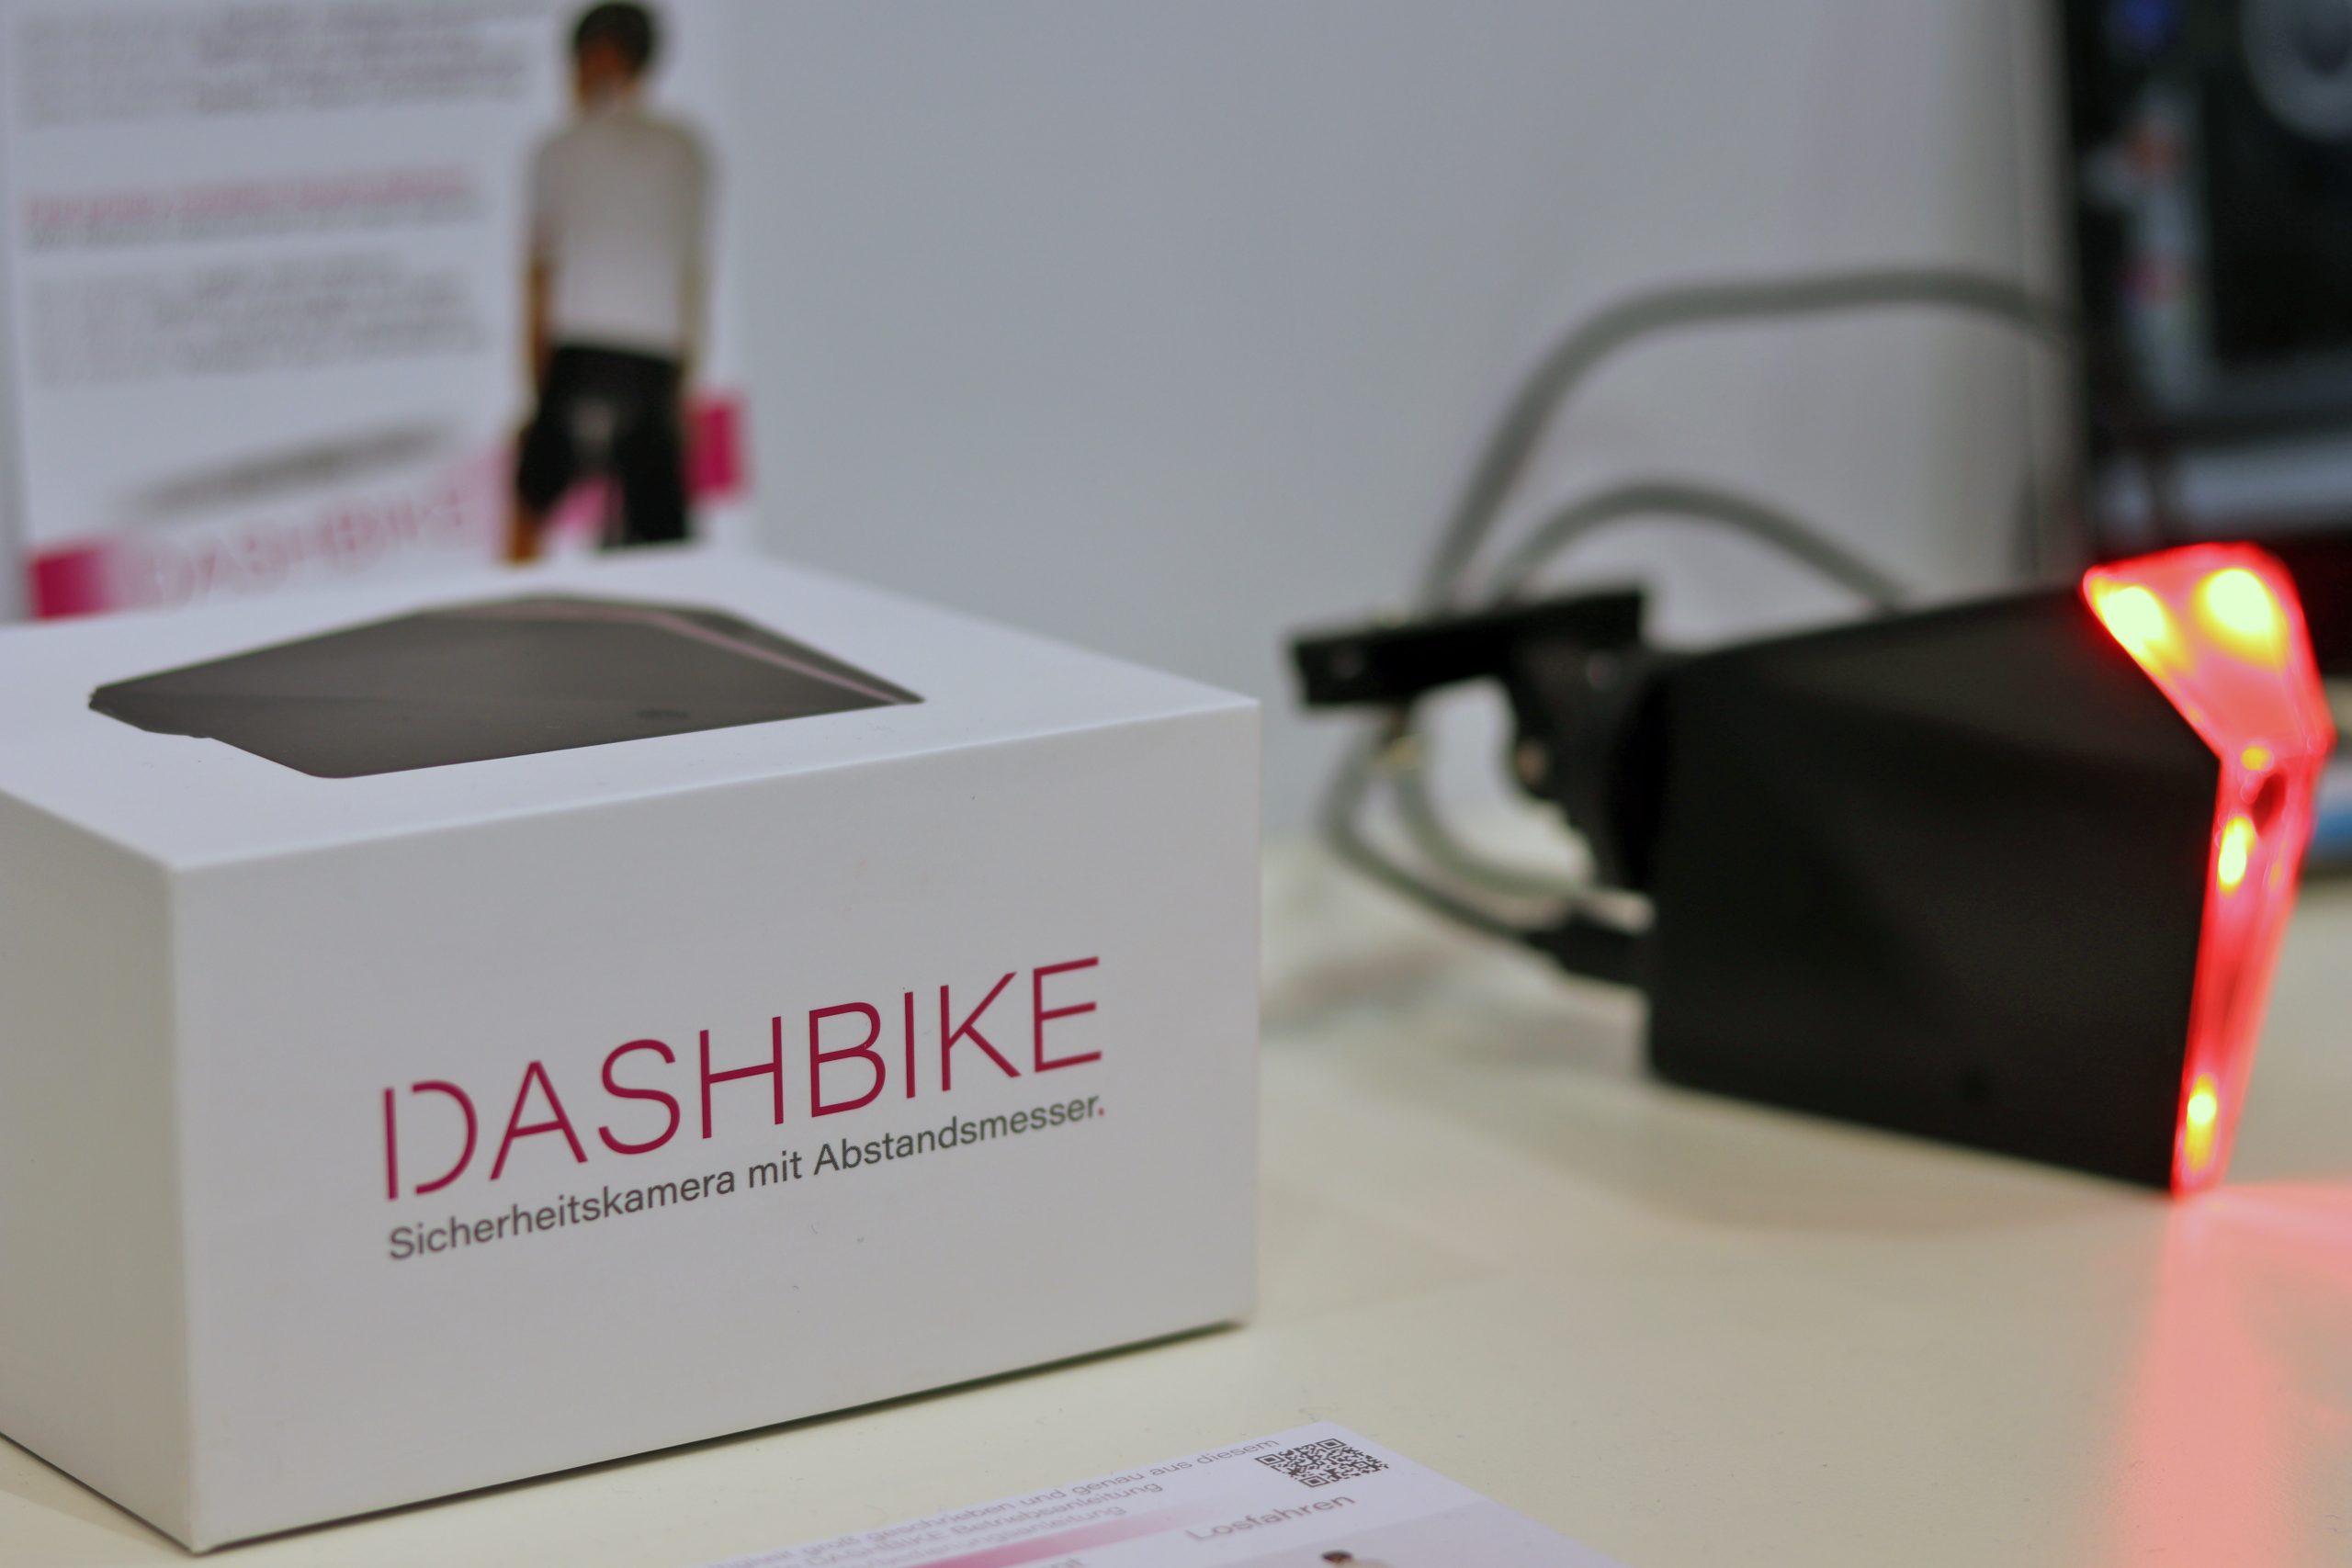 Dashbike: mais que uma câmara para bicicletas